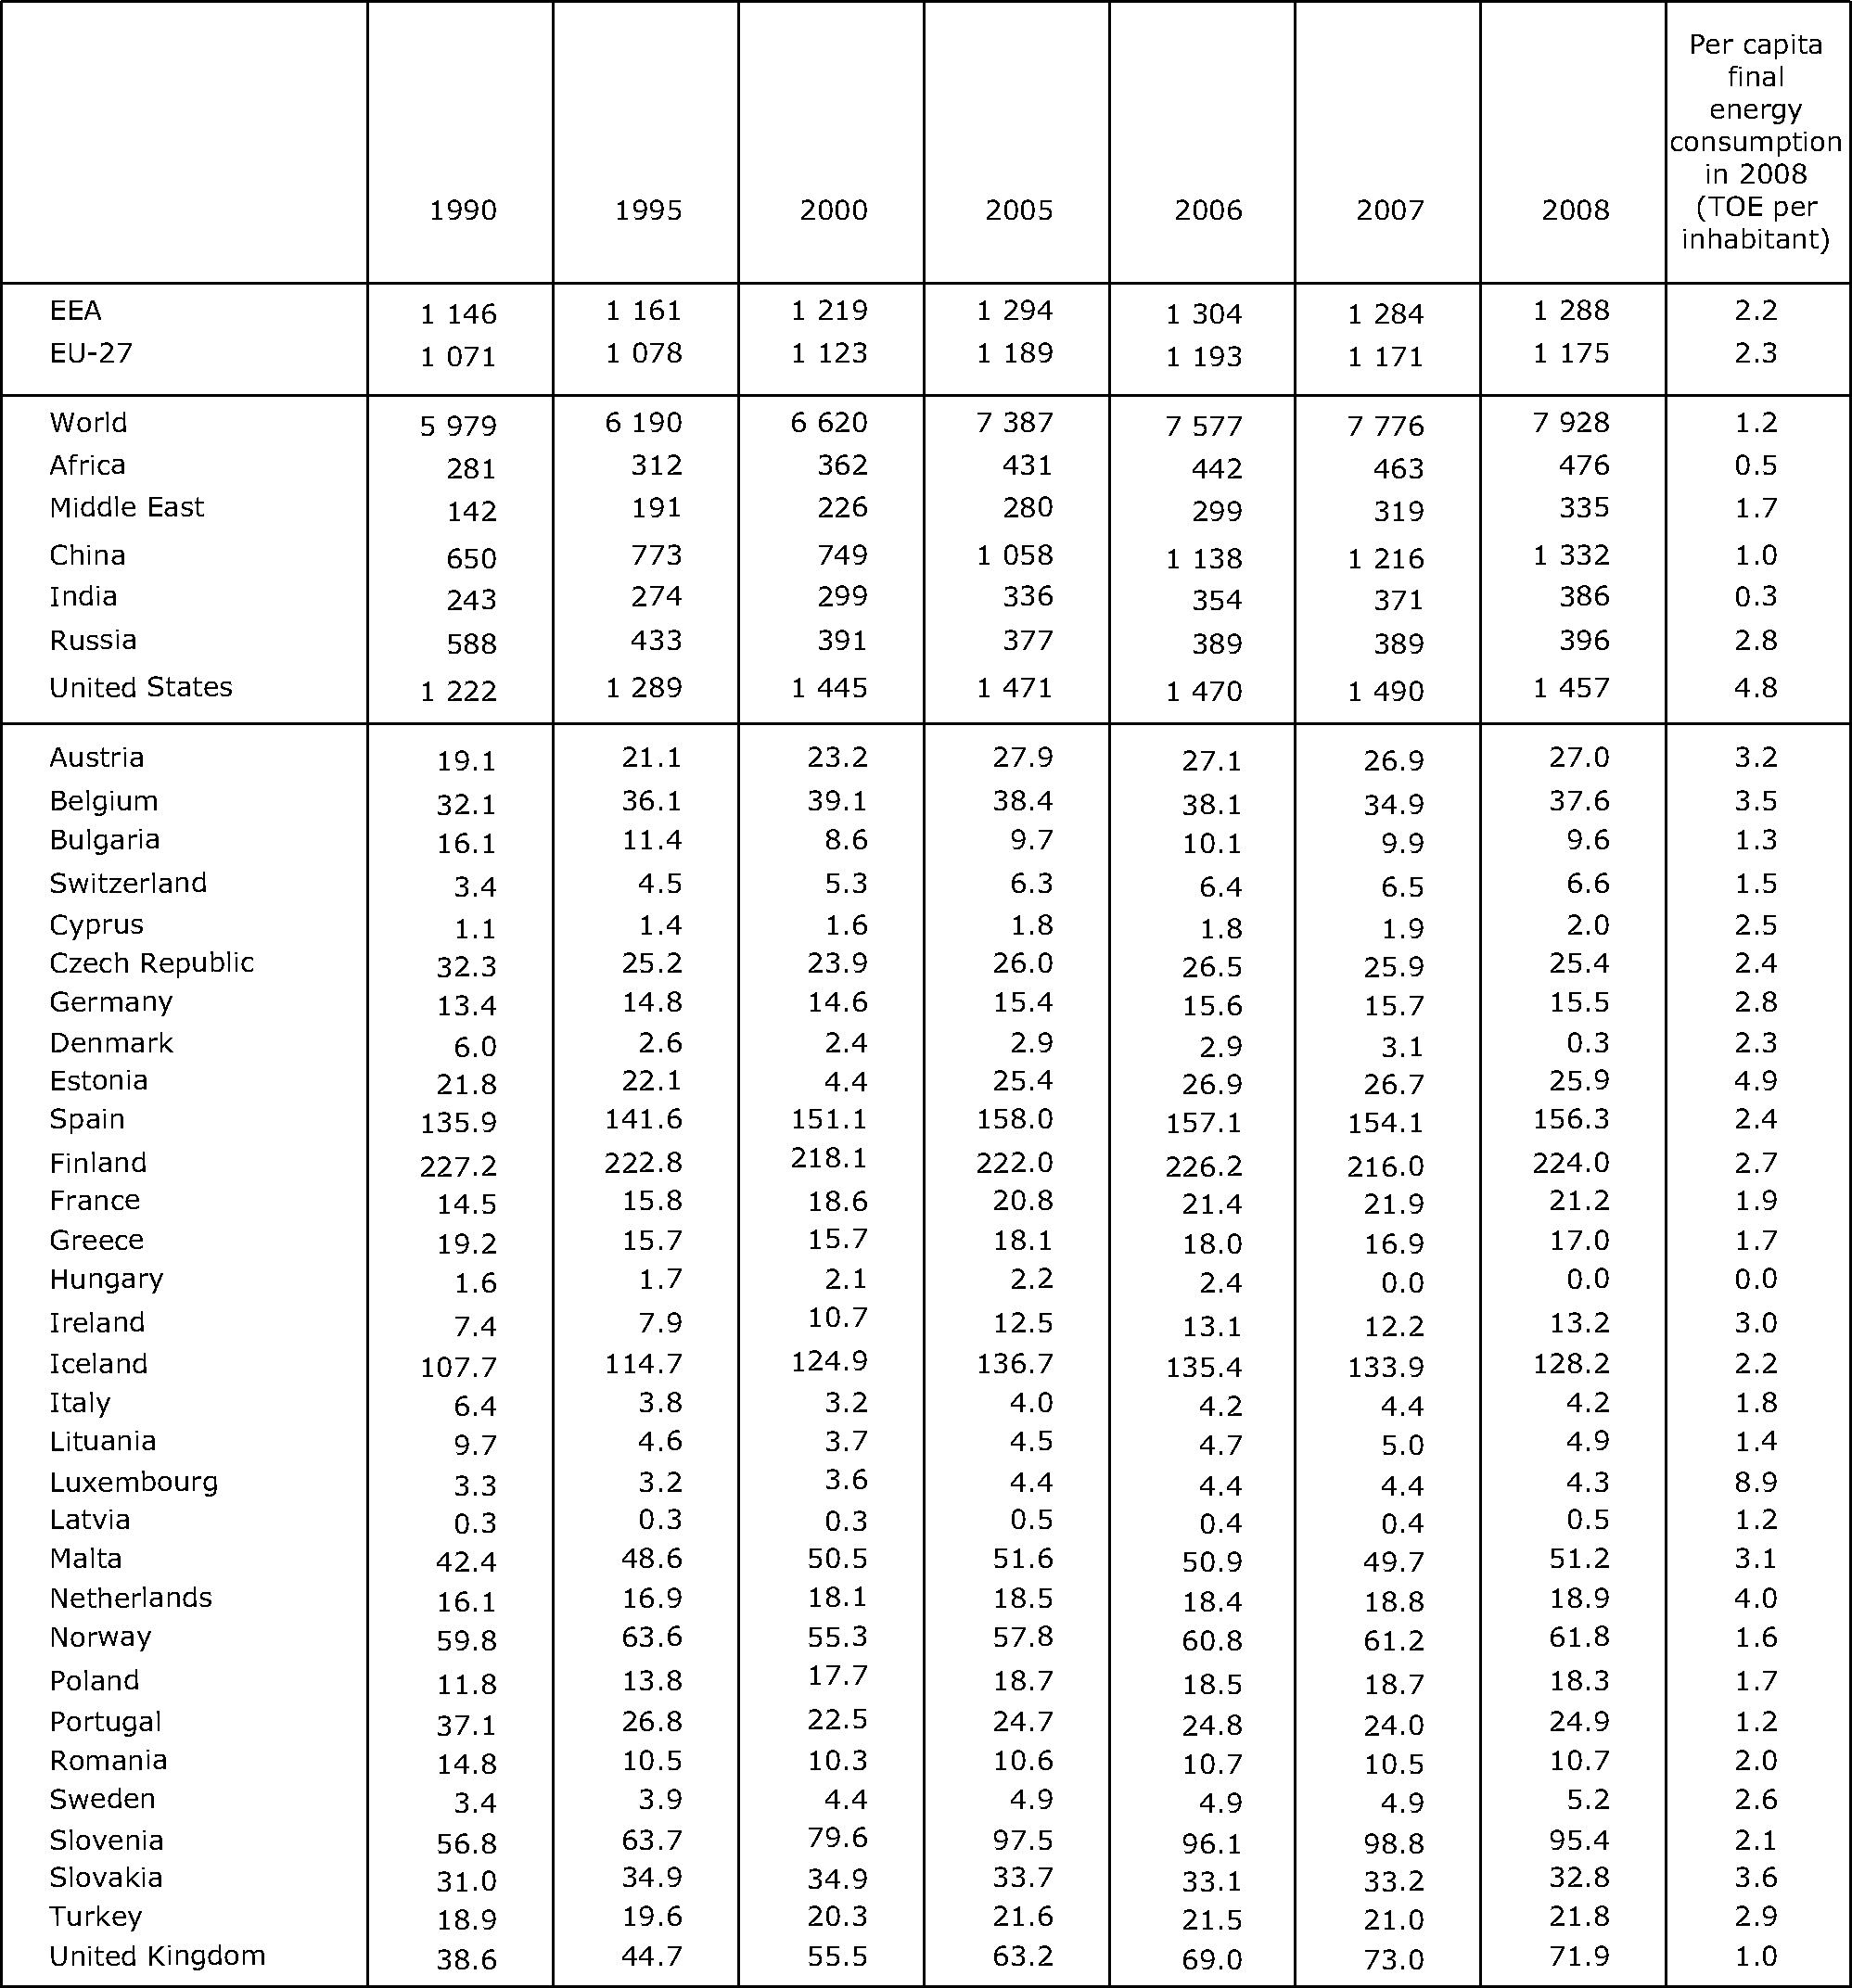 Final energy consumption (million TOE) and per capita final consumption, EU-27